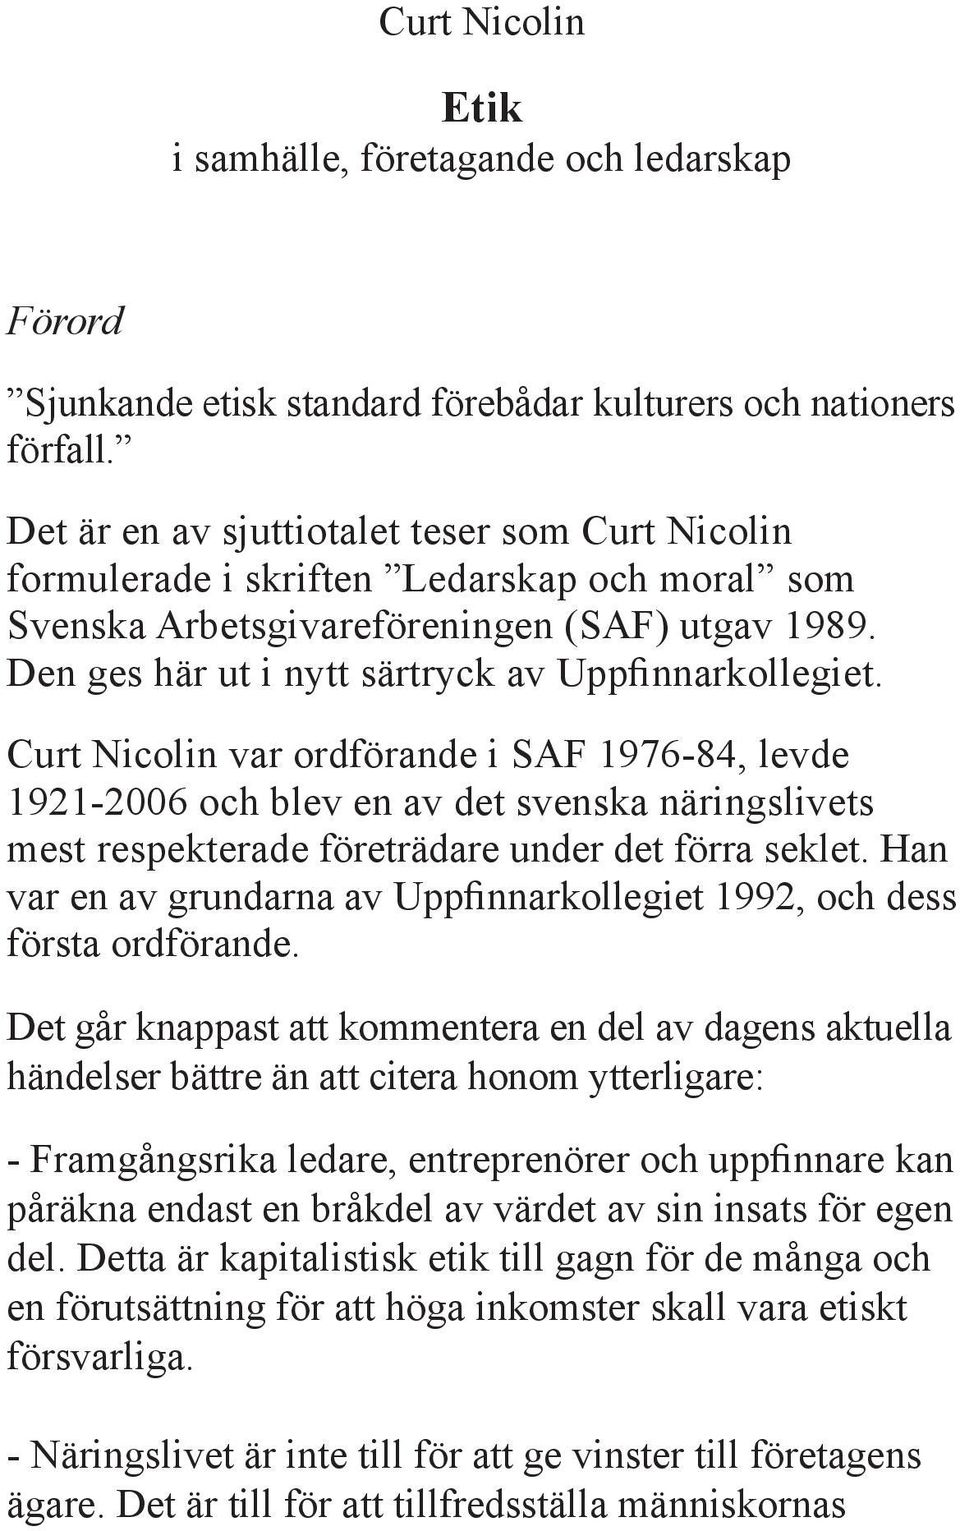 Curt Nicolin var ordförande i SAF 1976-84, levde 1921-2006 och blev en av det svenska näringslivets mest respekterade företrädare under det förra seklet.